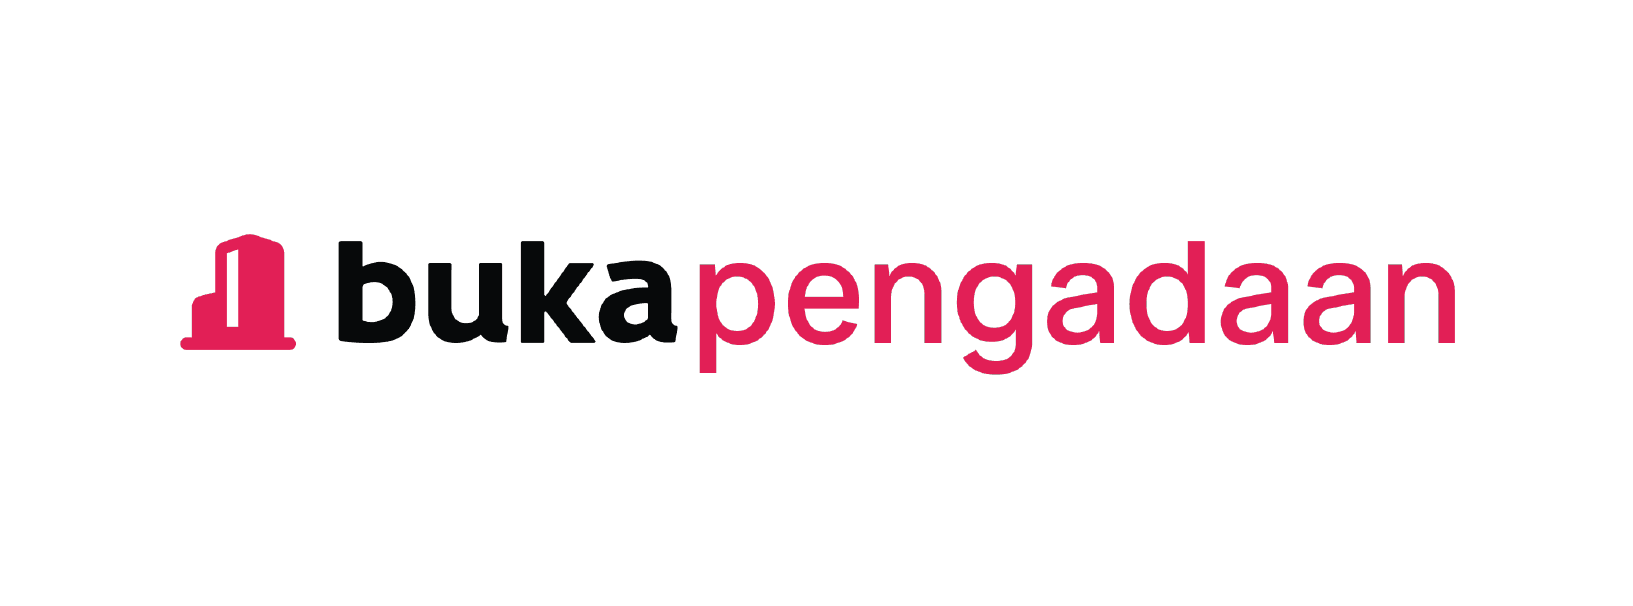 bukalapak Logo - About Us | Bukalapak